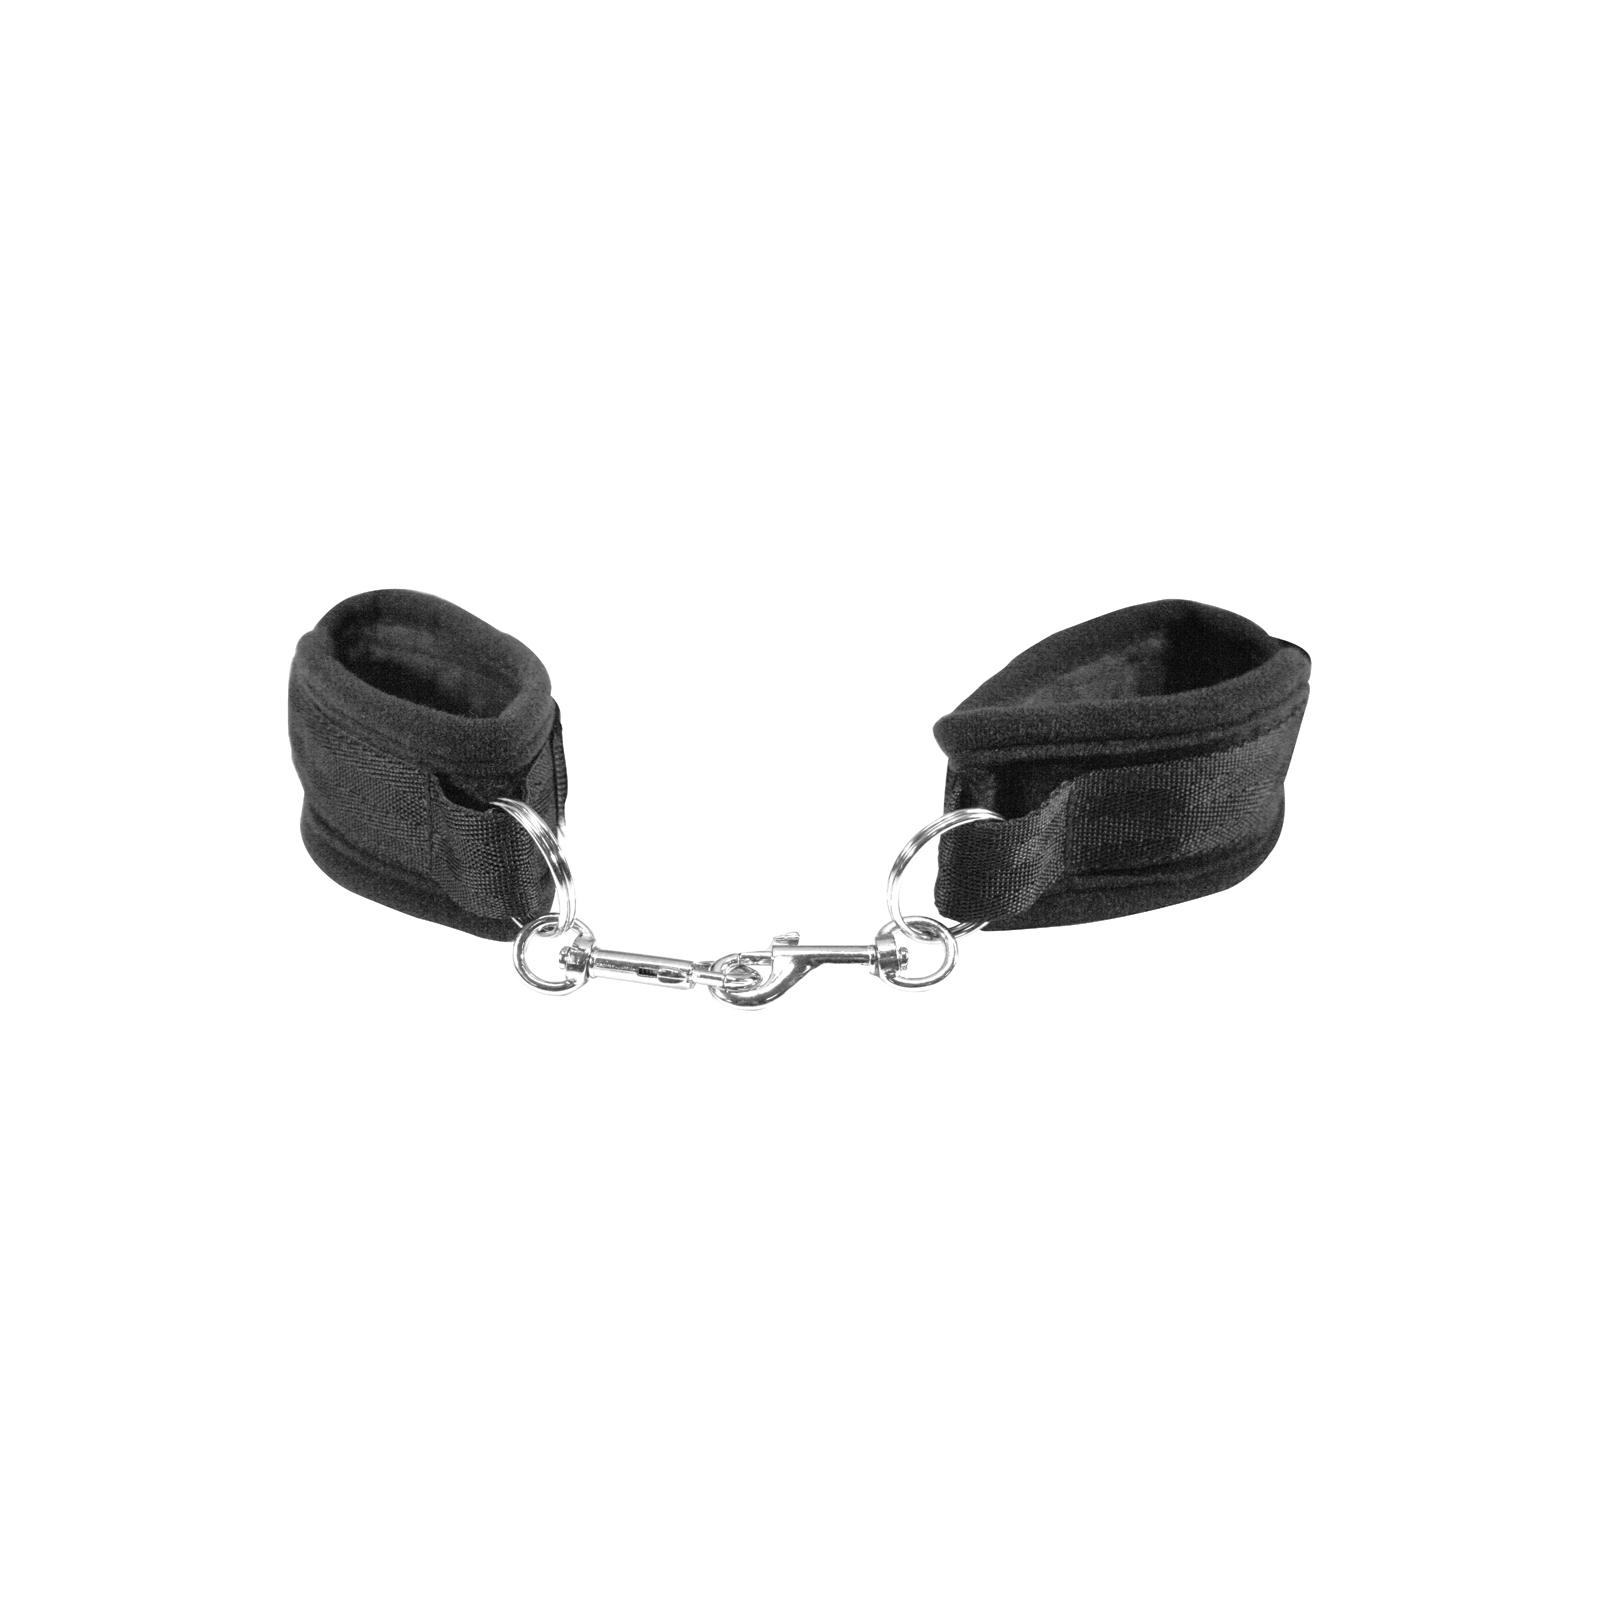 Sportsheets Beginners Handcuffs